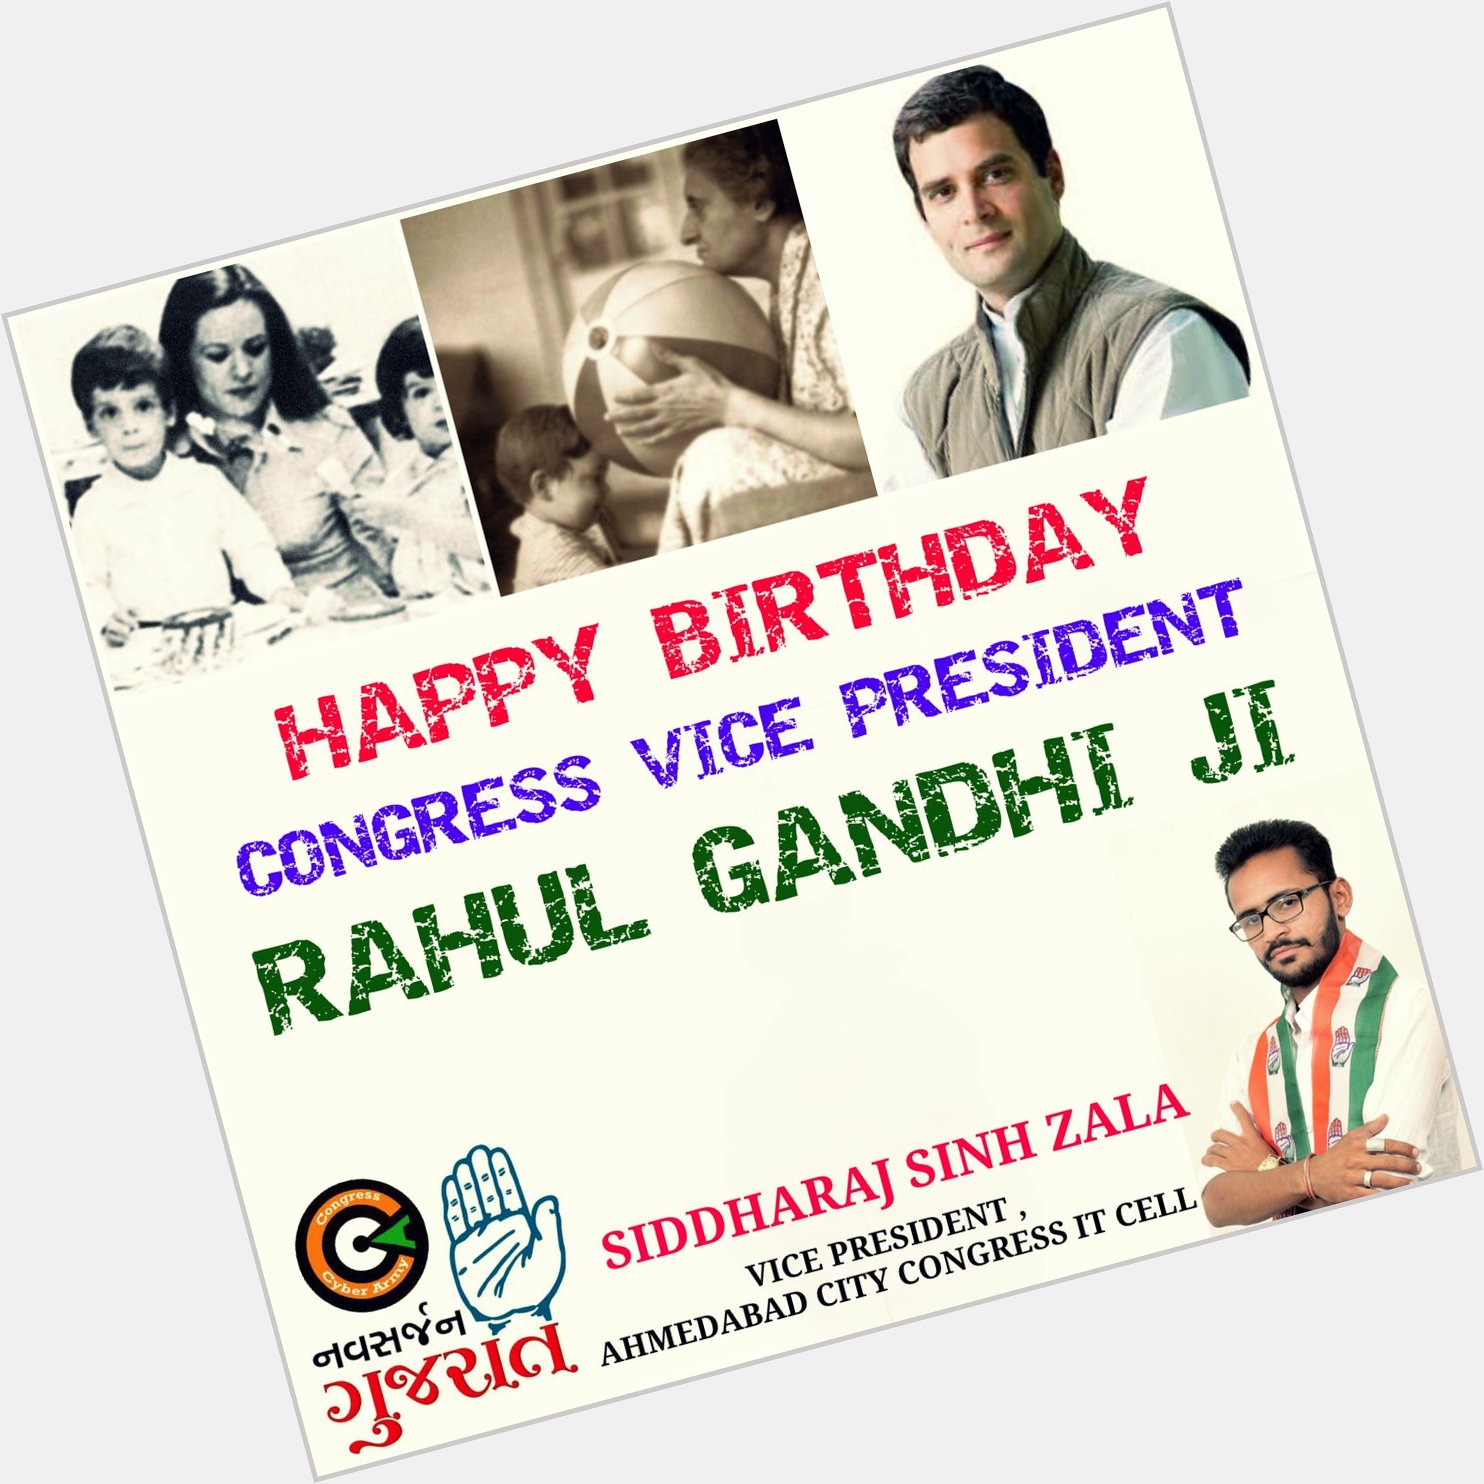    Happy Birthday Rahul Gandhi ji 